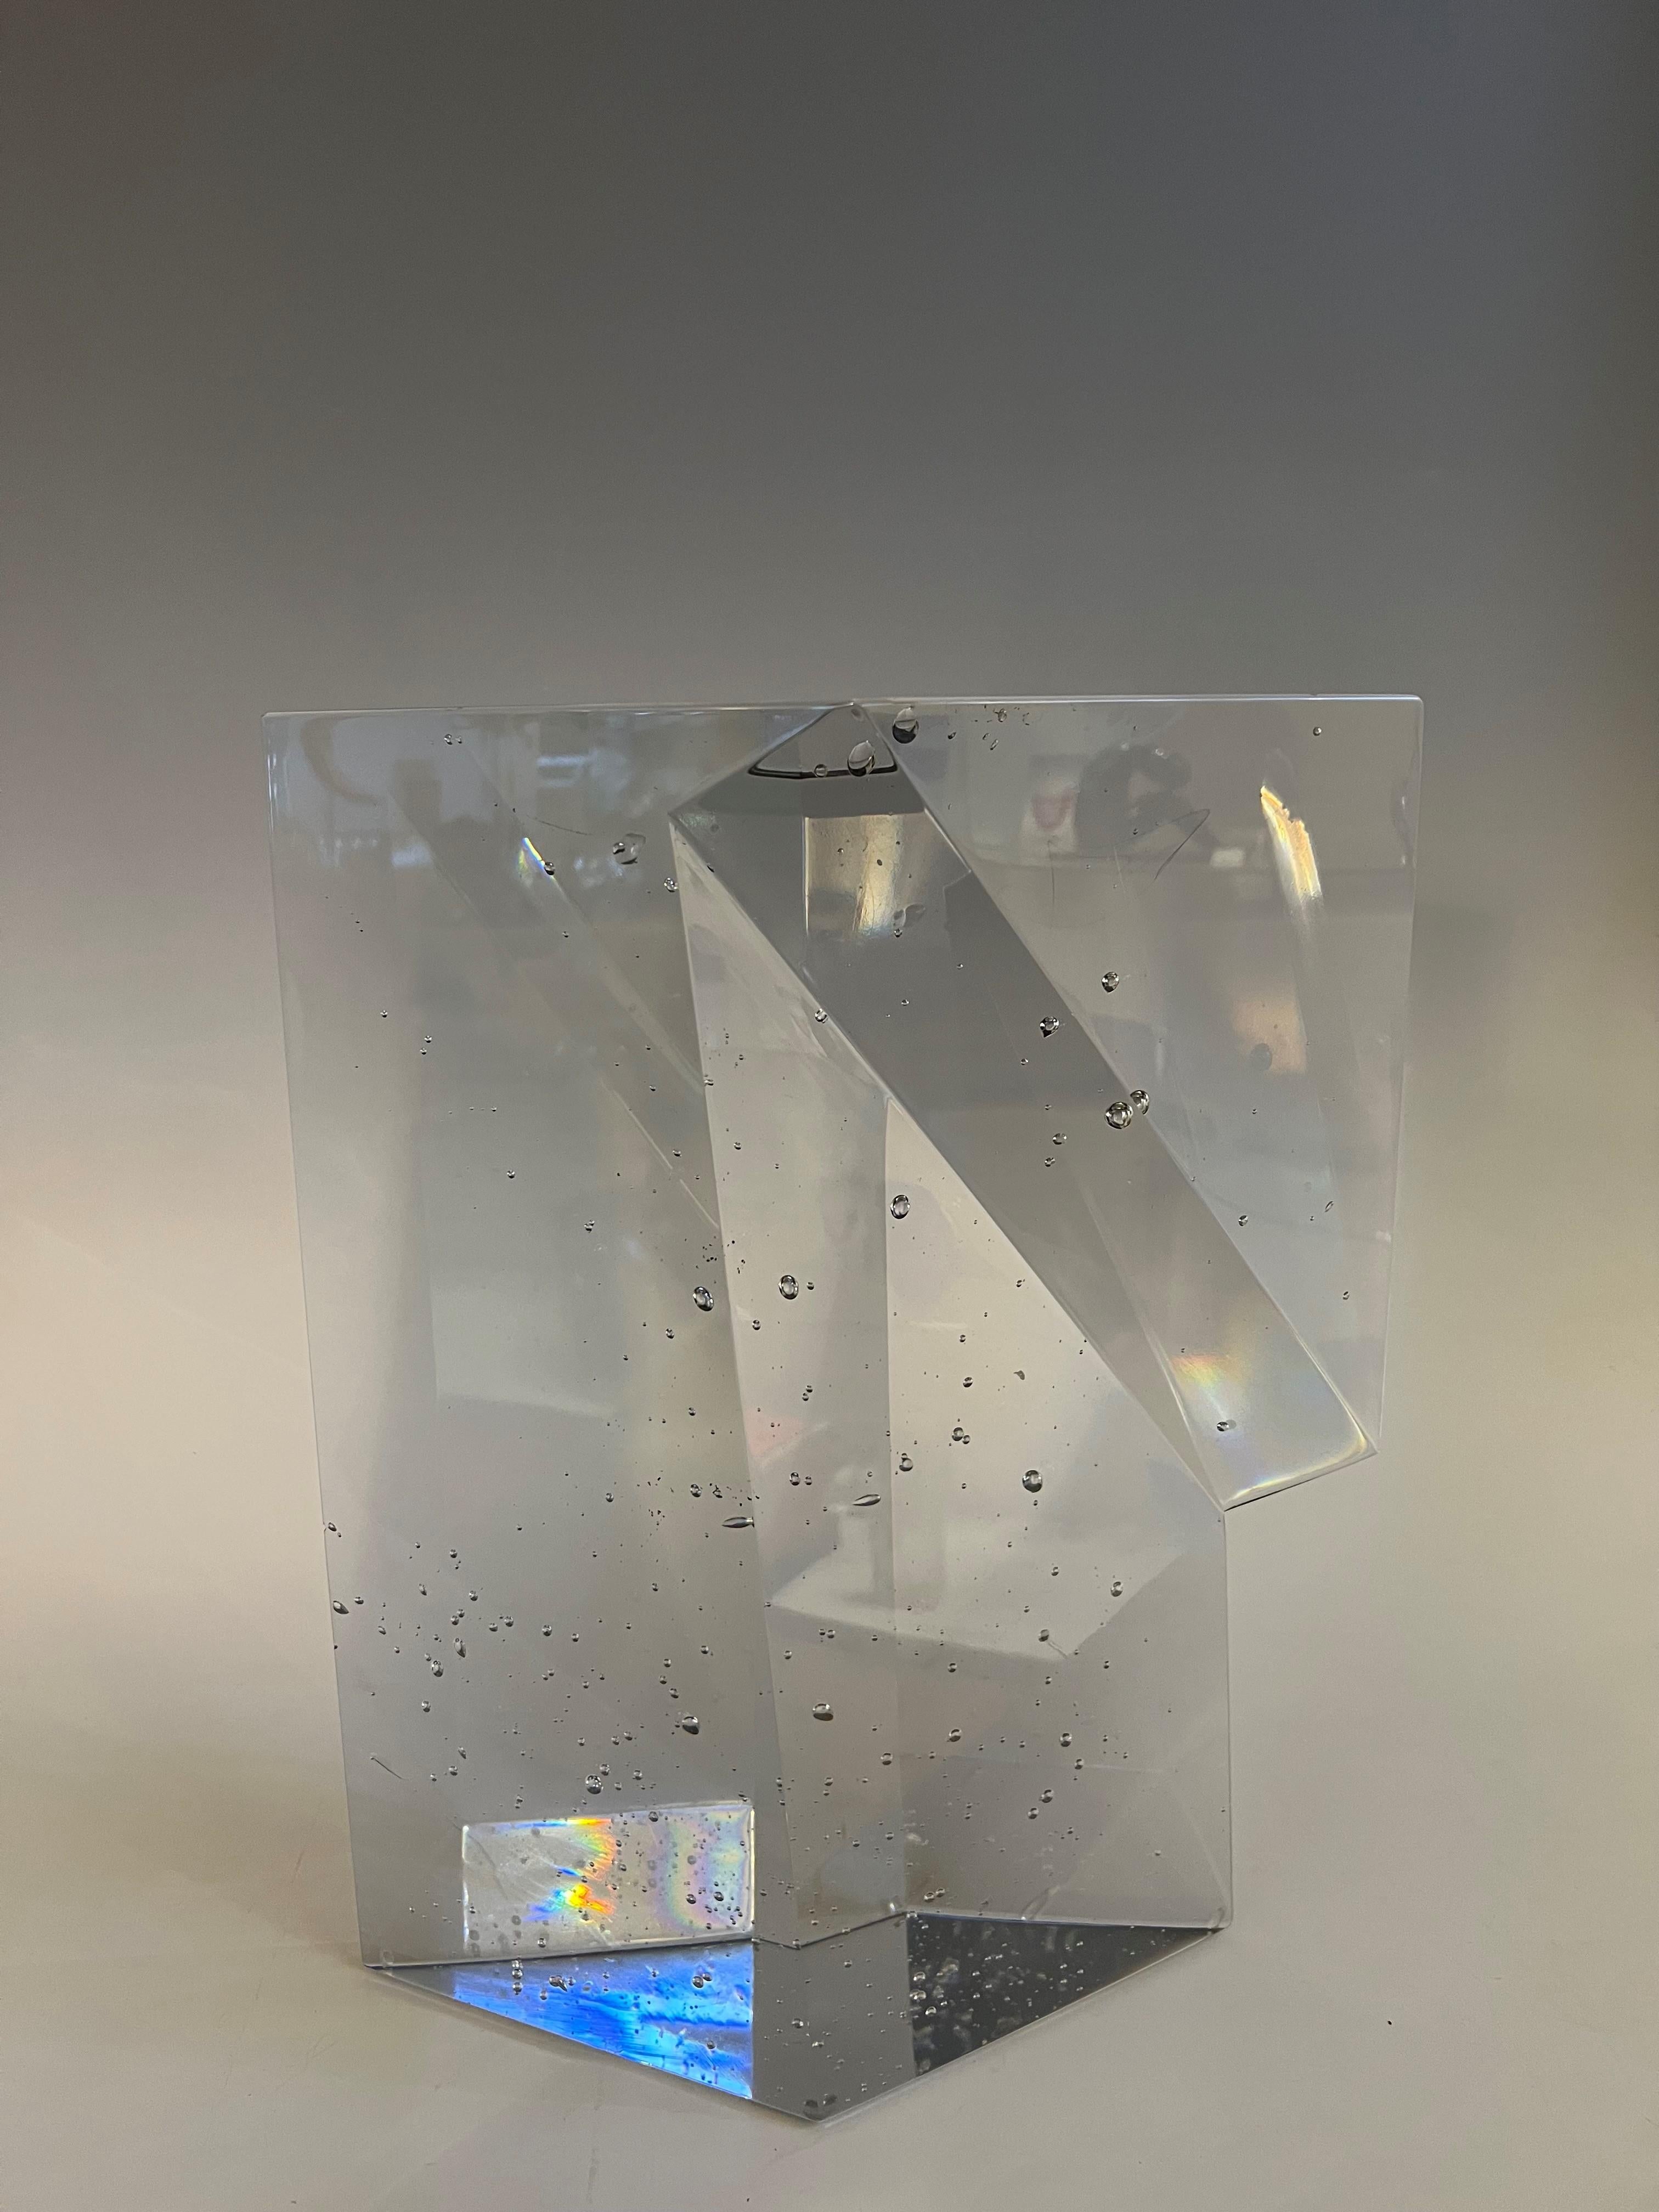 Schöne Skulptur aus geschmolzenem Kristallglas, entworfen und hergestellt von Jan Exnar, Tschechische Republik 1991.

Das Glas scheint Kristallglas oder neutrales Glas zu sein, in Schmelzglas-Technik. 
Eine unglaubliche Arbeit der Verfeinerung mit